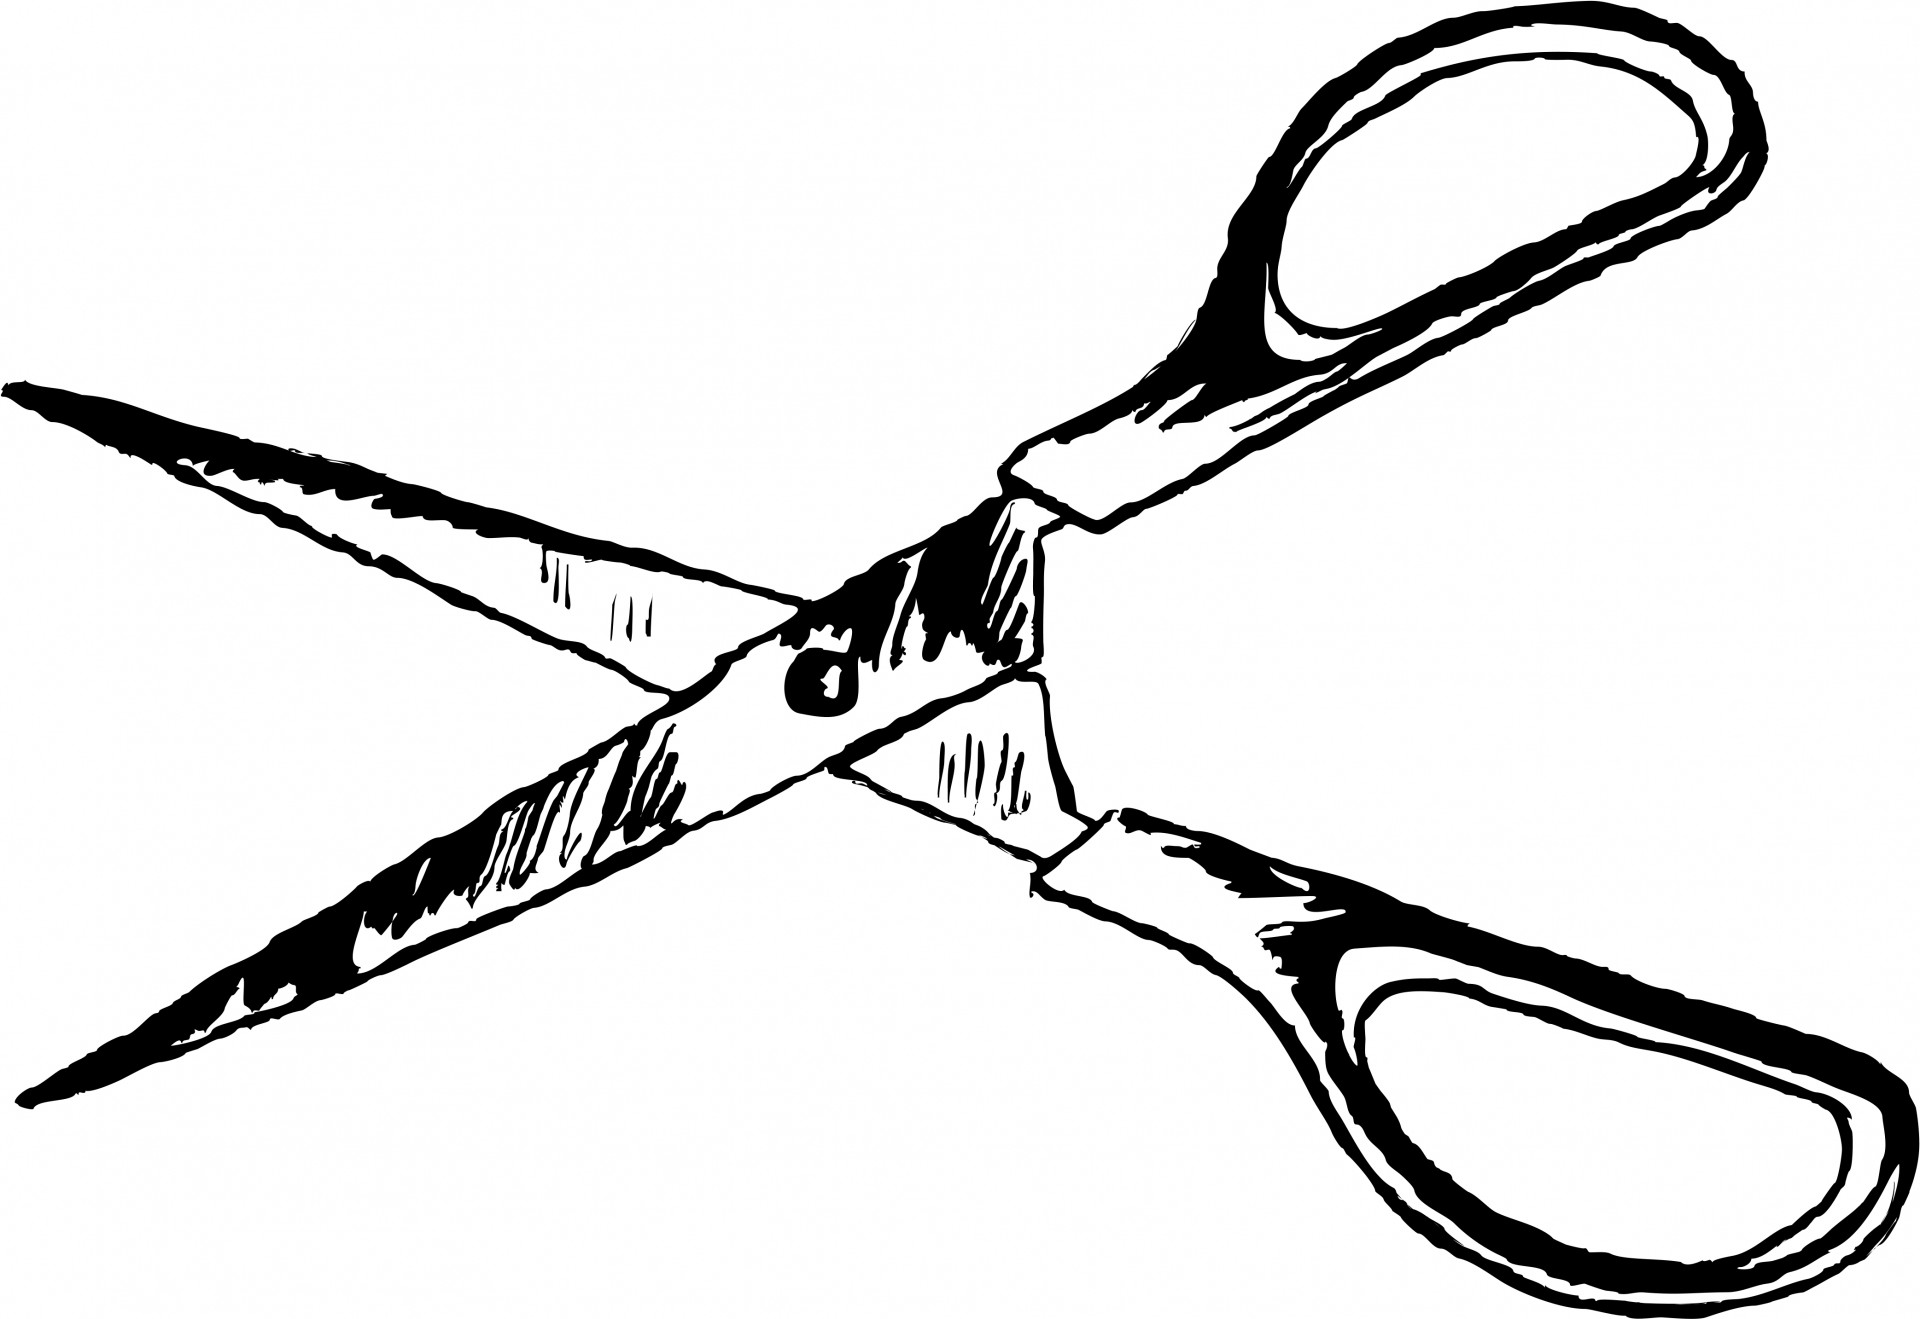 60 Free Scissors Clip Art - Cliparting.com